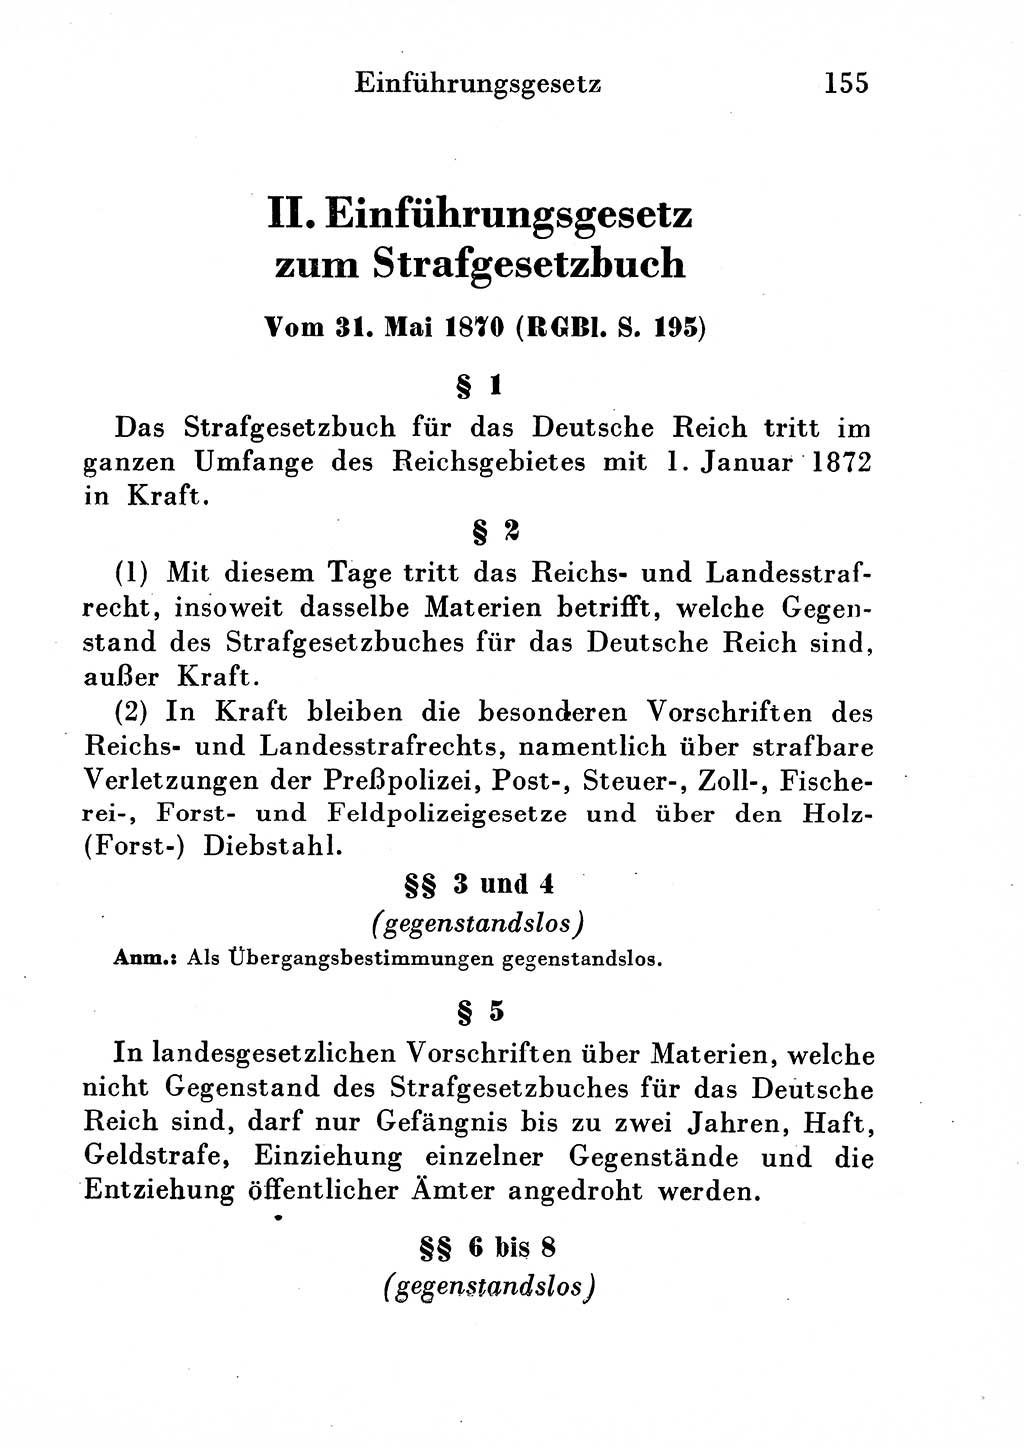 Strafgesetzbuch (StGB) und andere Strafgesetze [Deutsche Demokratische Republik (DDR)] 1954, Seite 155 (StGB Strafges. DDR 1954, S. 155)